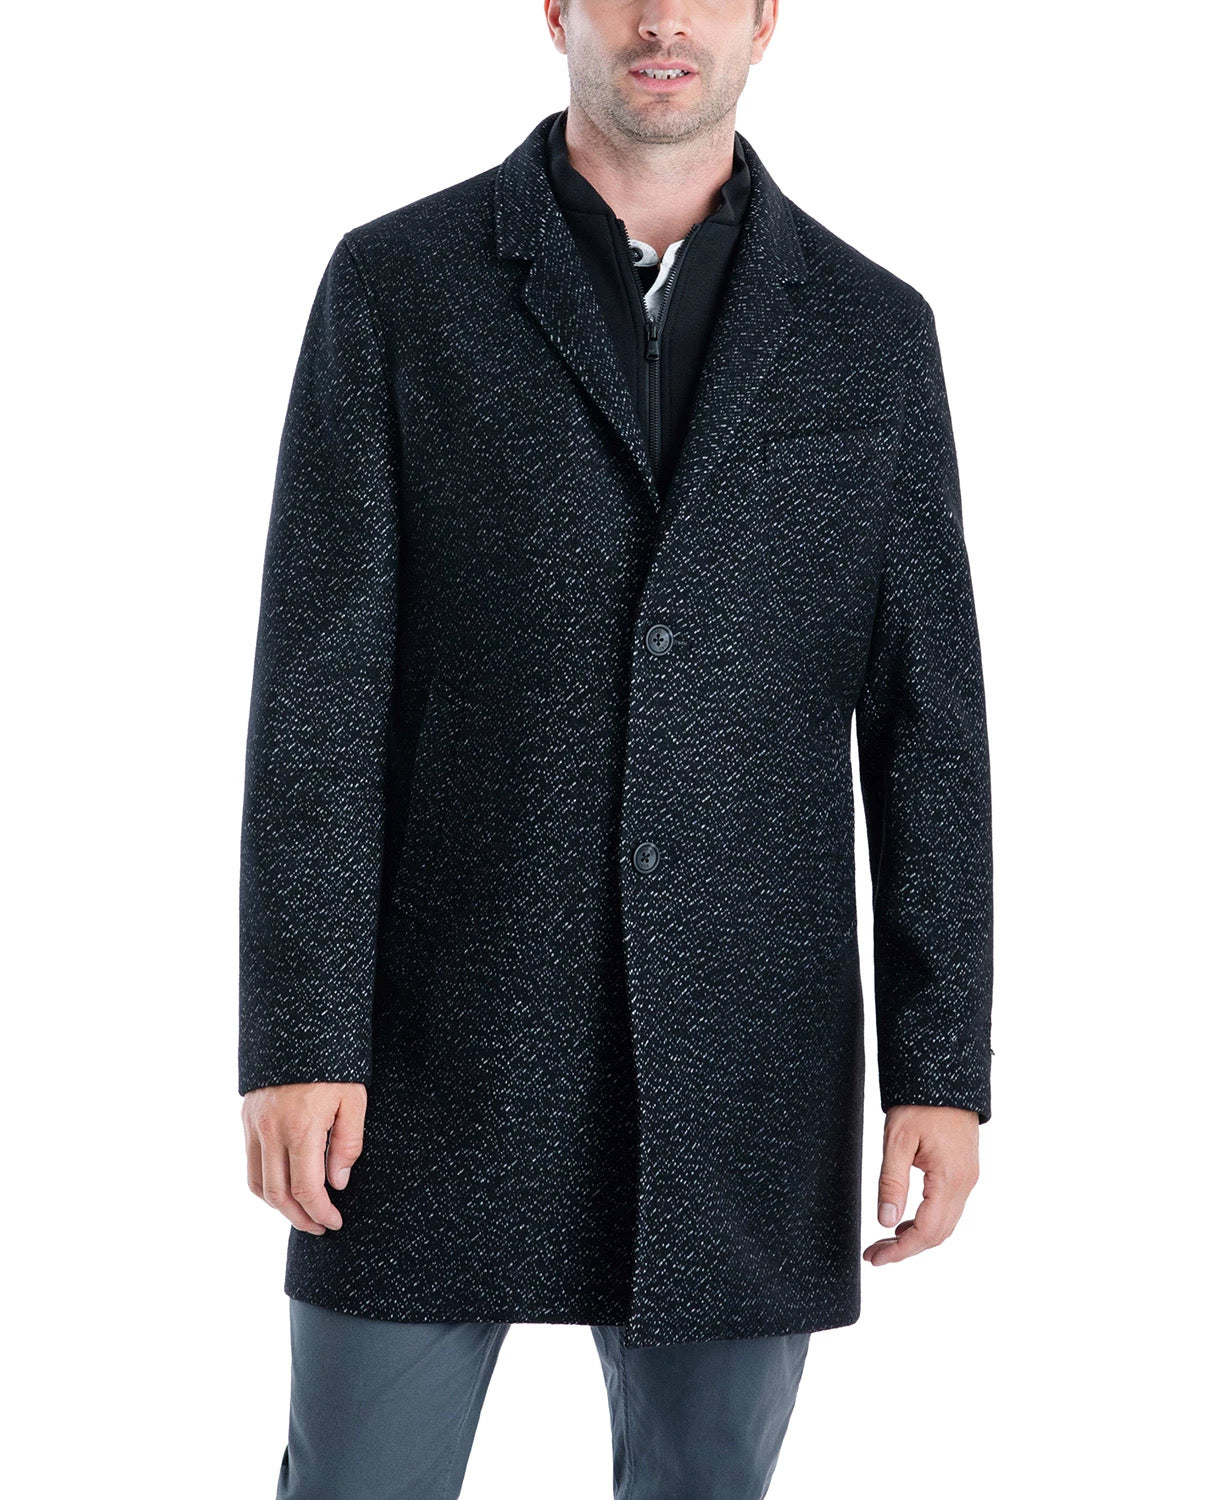 Michael Kors Men's Pike Slim Fit Top Coat 46L Black / White Overcoat